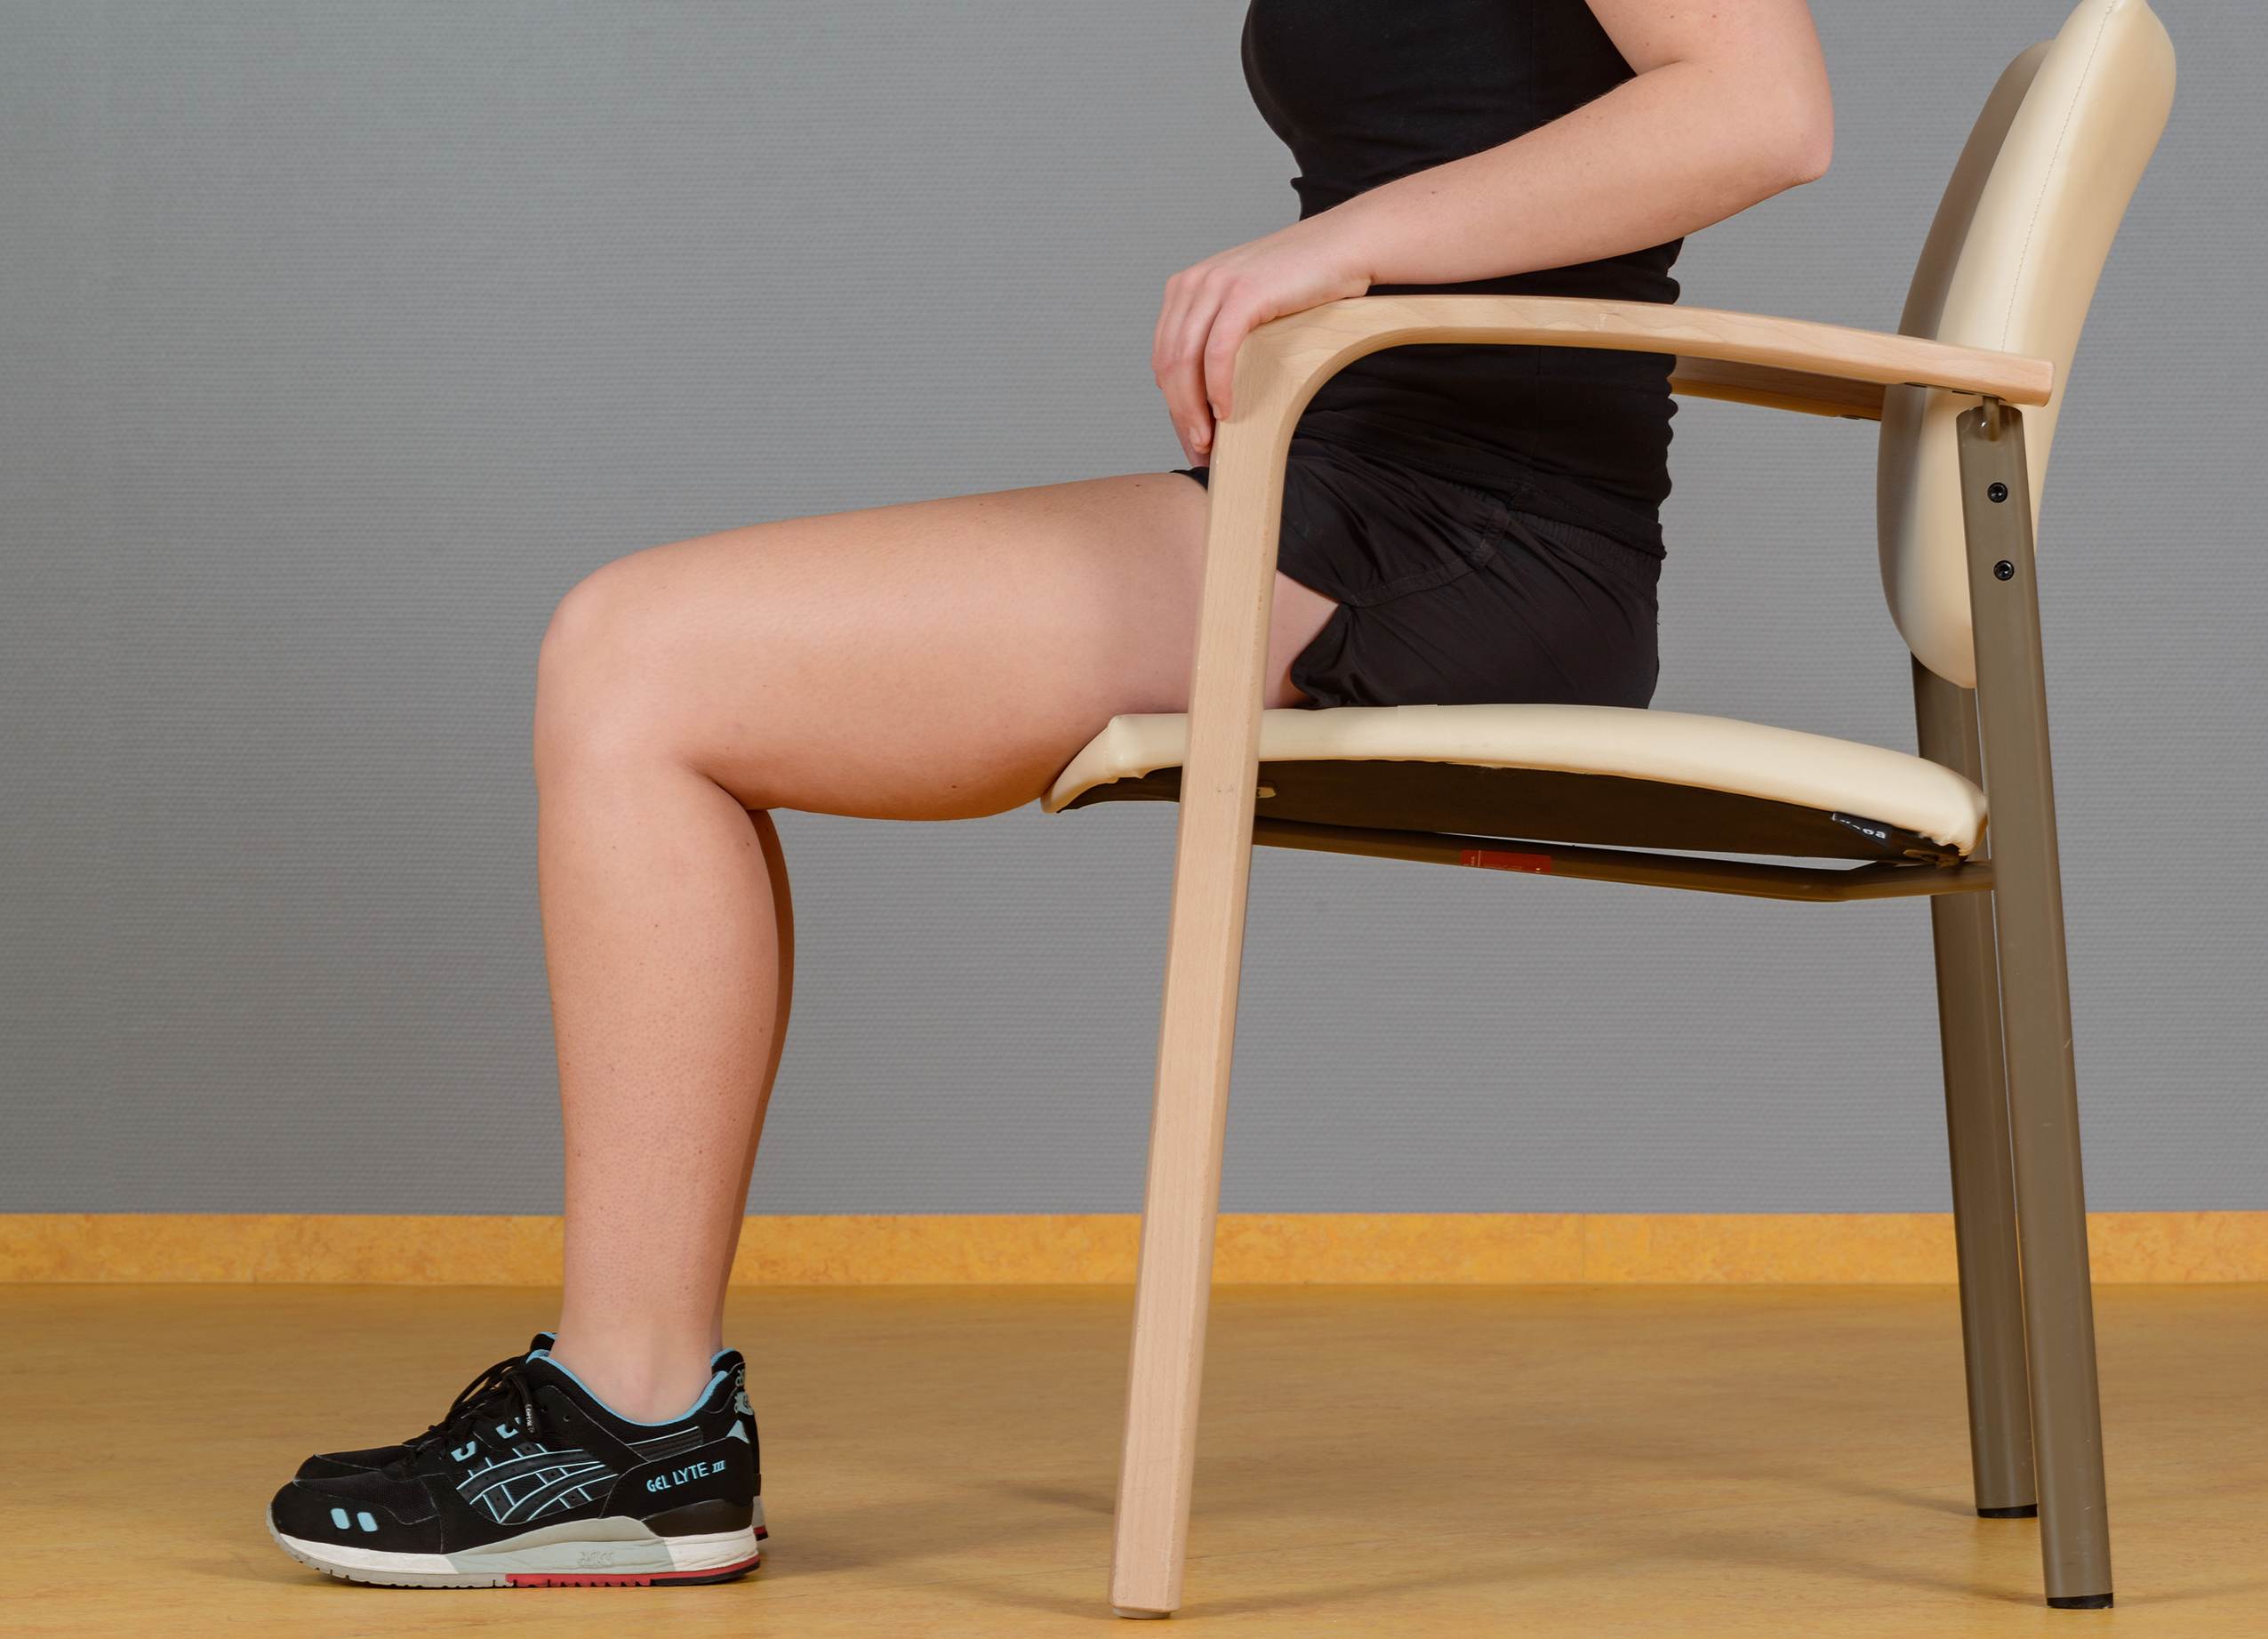 Oefening fysiotherapie zitten op stoel benen gebogen voeten op grond